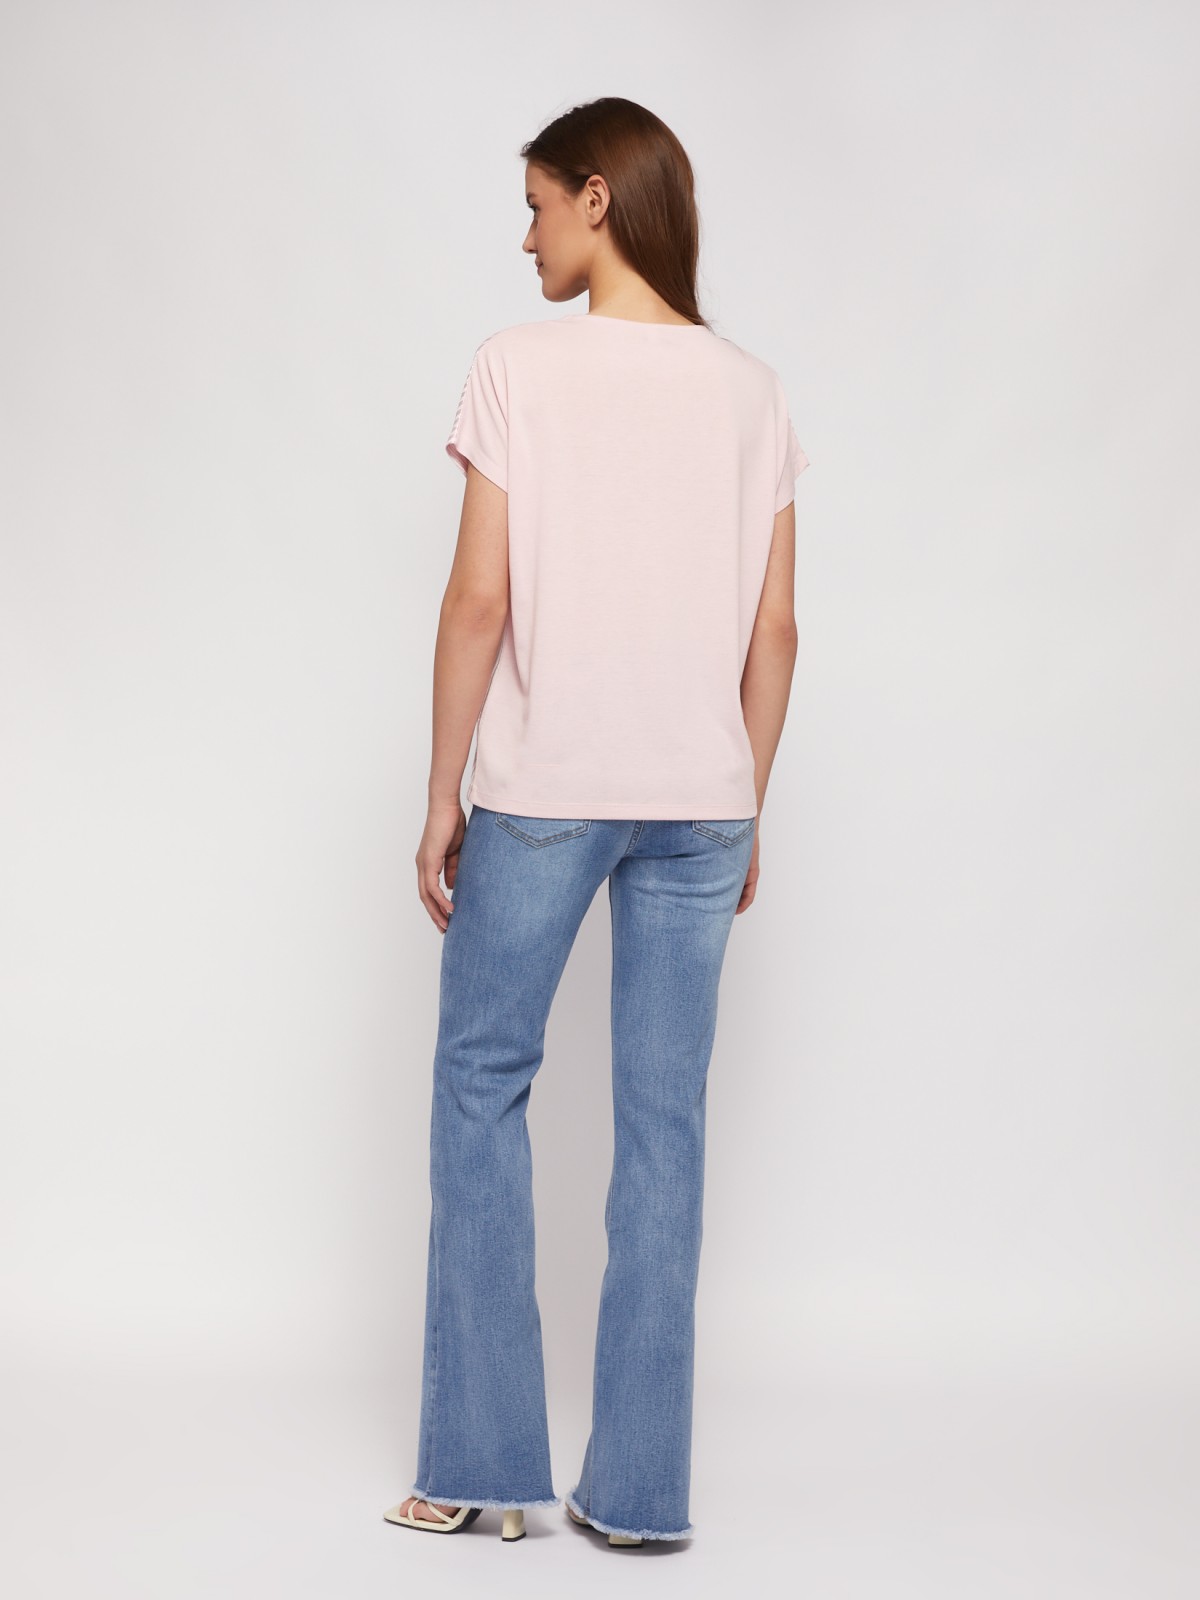 Трикотажный комбинированный топ-блузка с блеском zolla 024223226033, цвет розовый, размер XS - фото 6